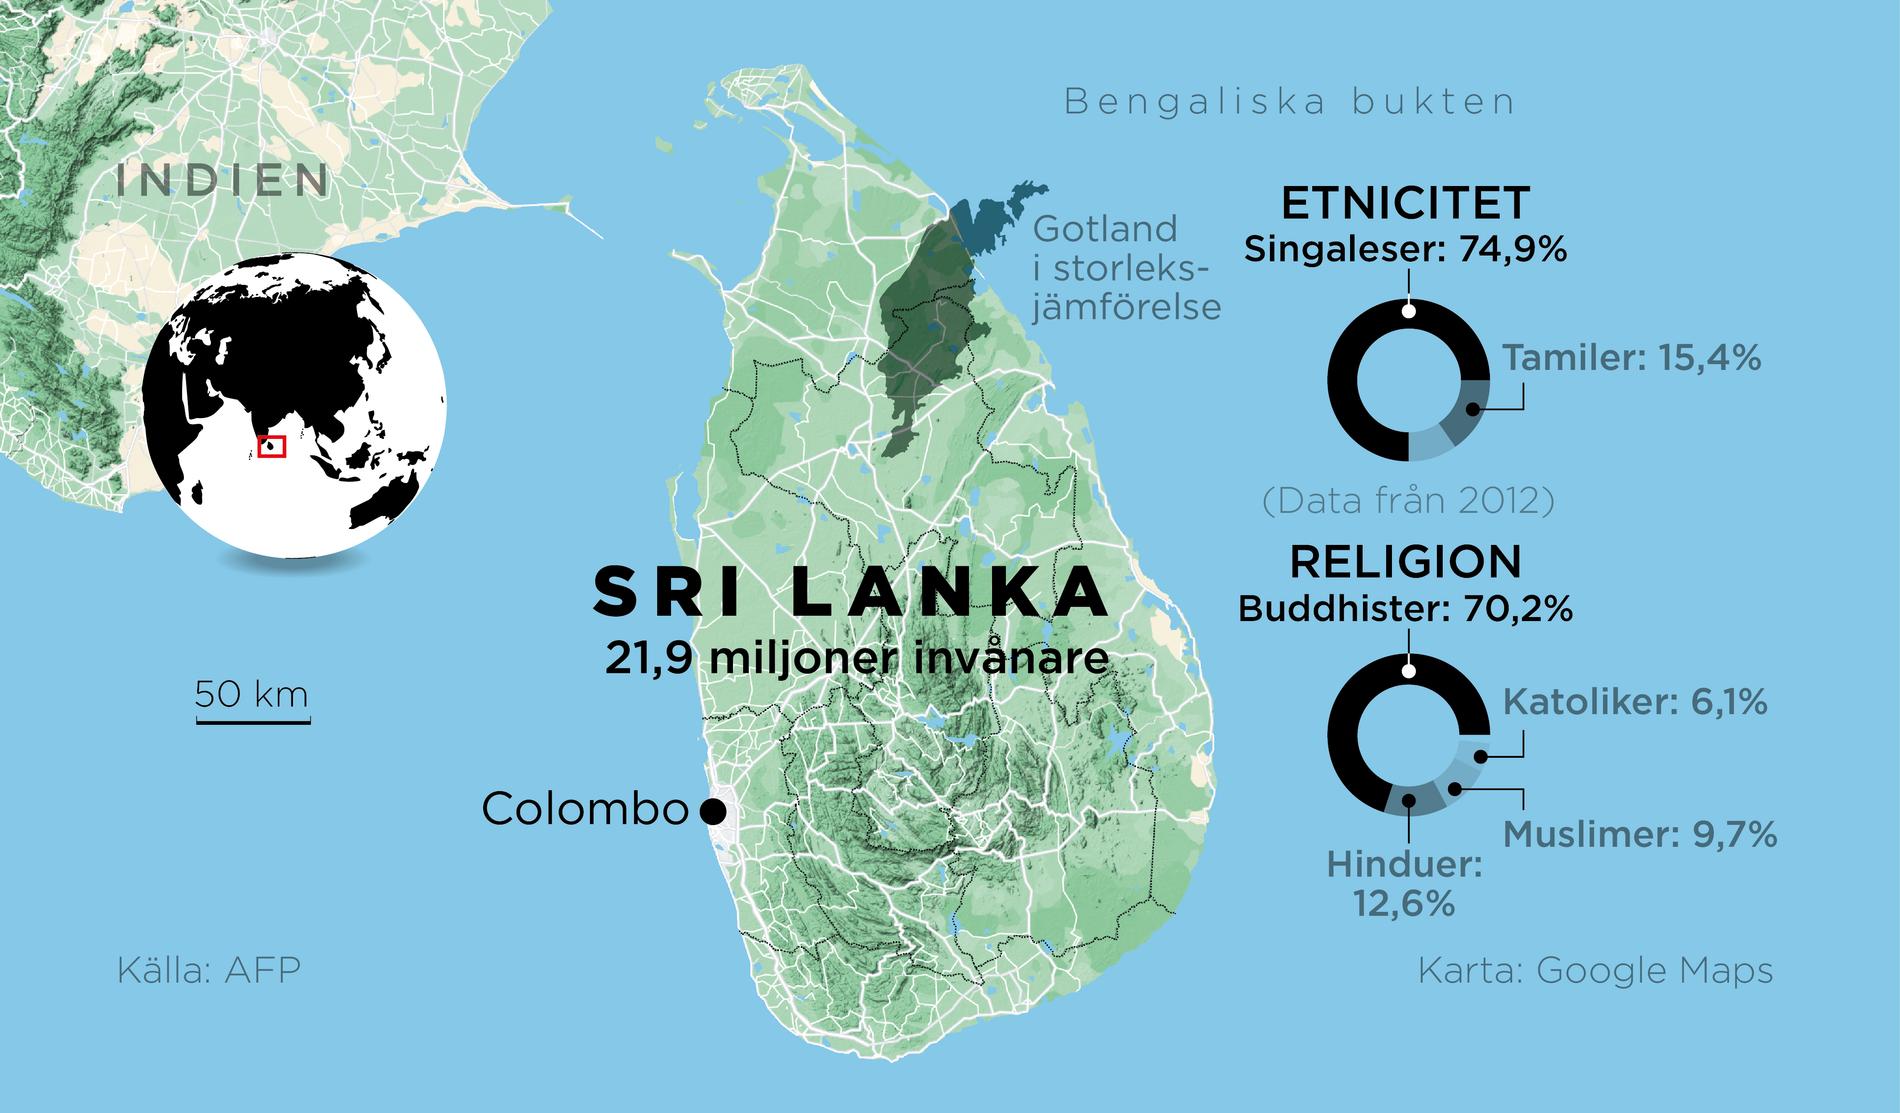 Fakta om önationen Sri Lanka.